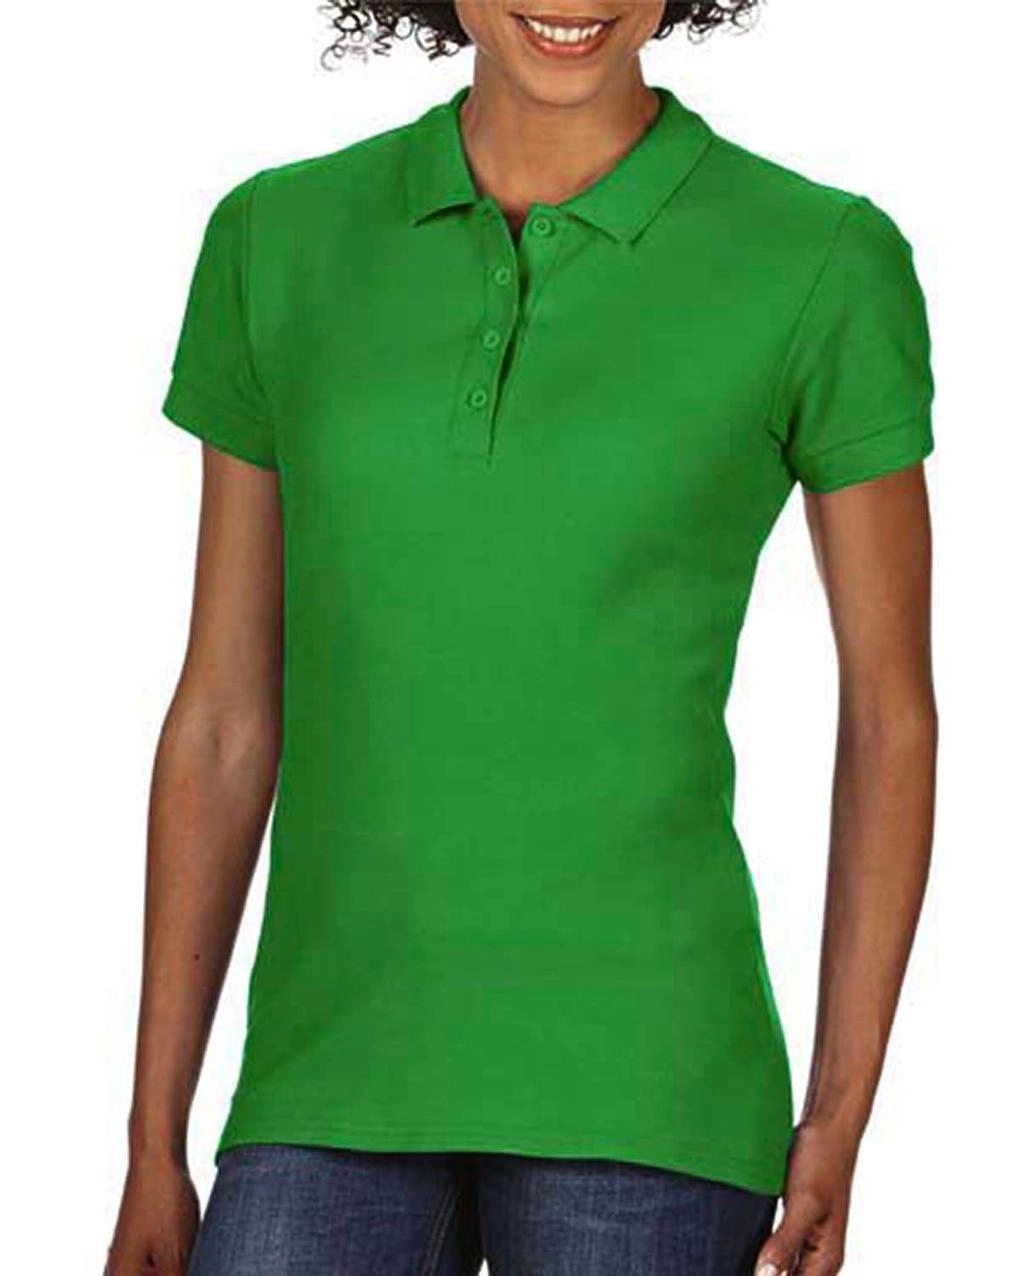 Softstyle® Ladies Double Pique Polo zum Besticken und Bedrucken in der Farbe Irish Green mit Ihren Logo, Schriftzug oder Motiv.